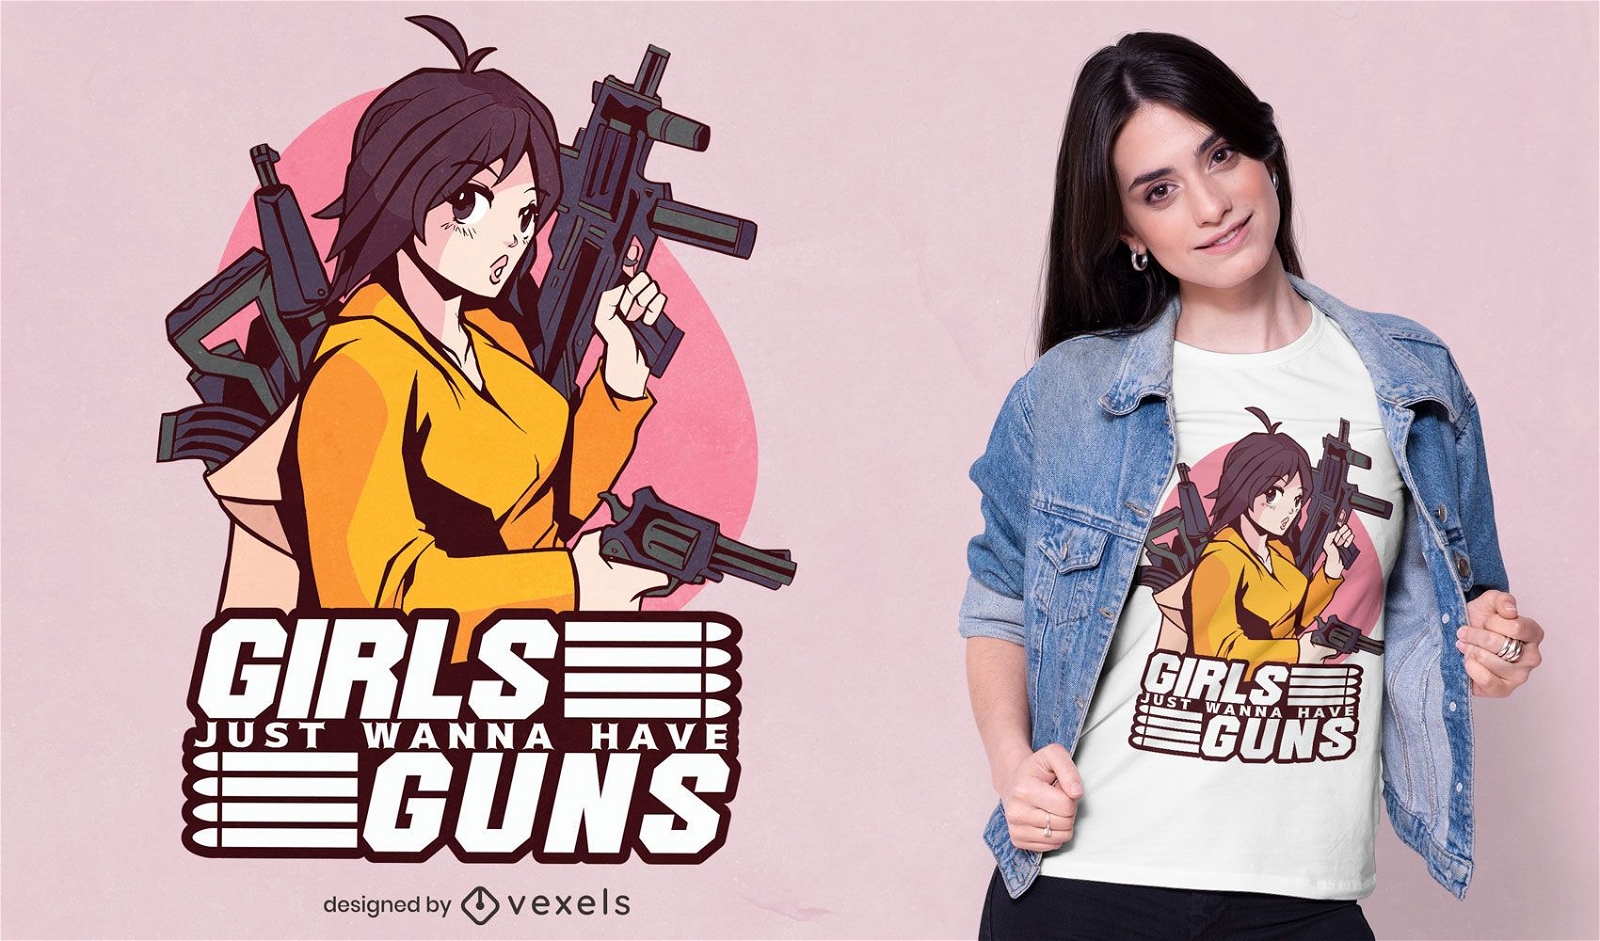 girls with guns clothing logo